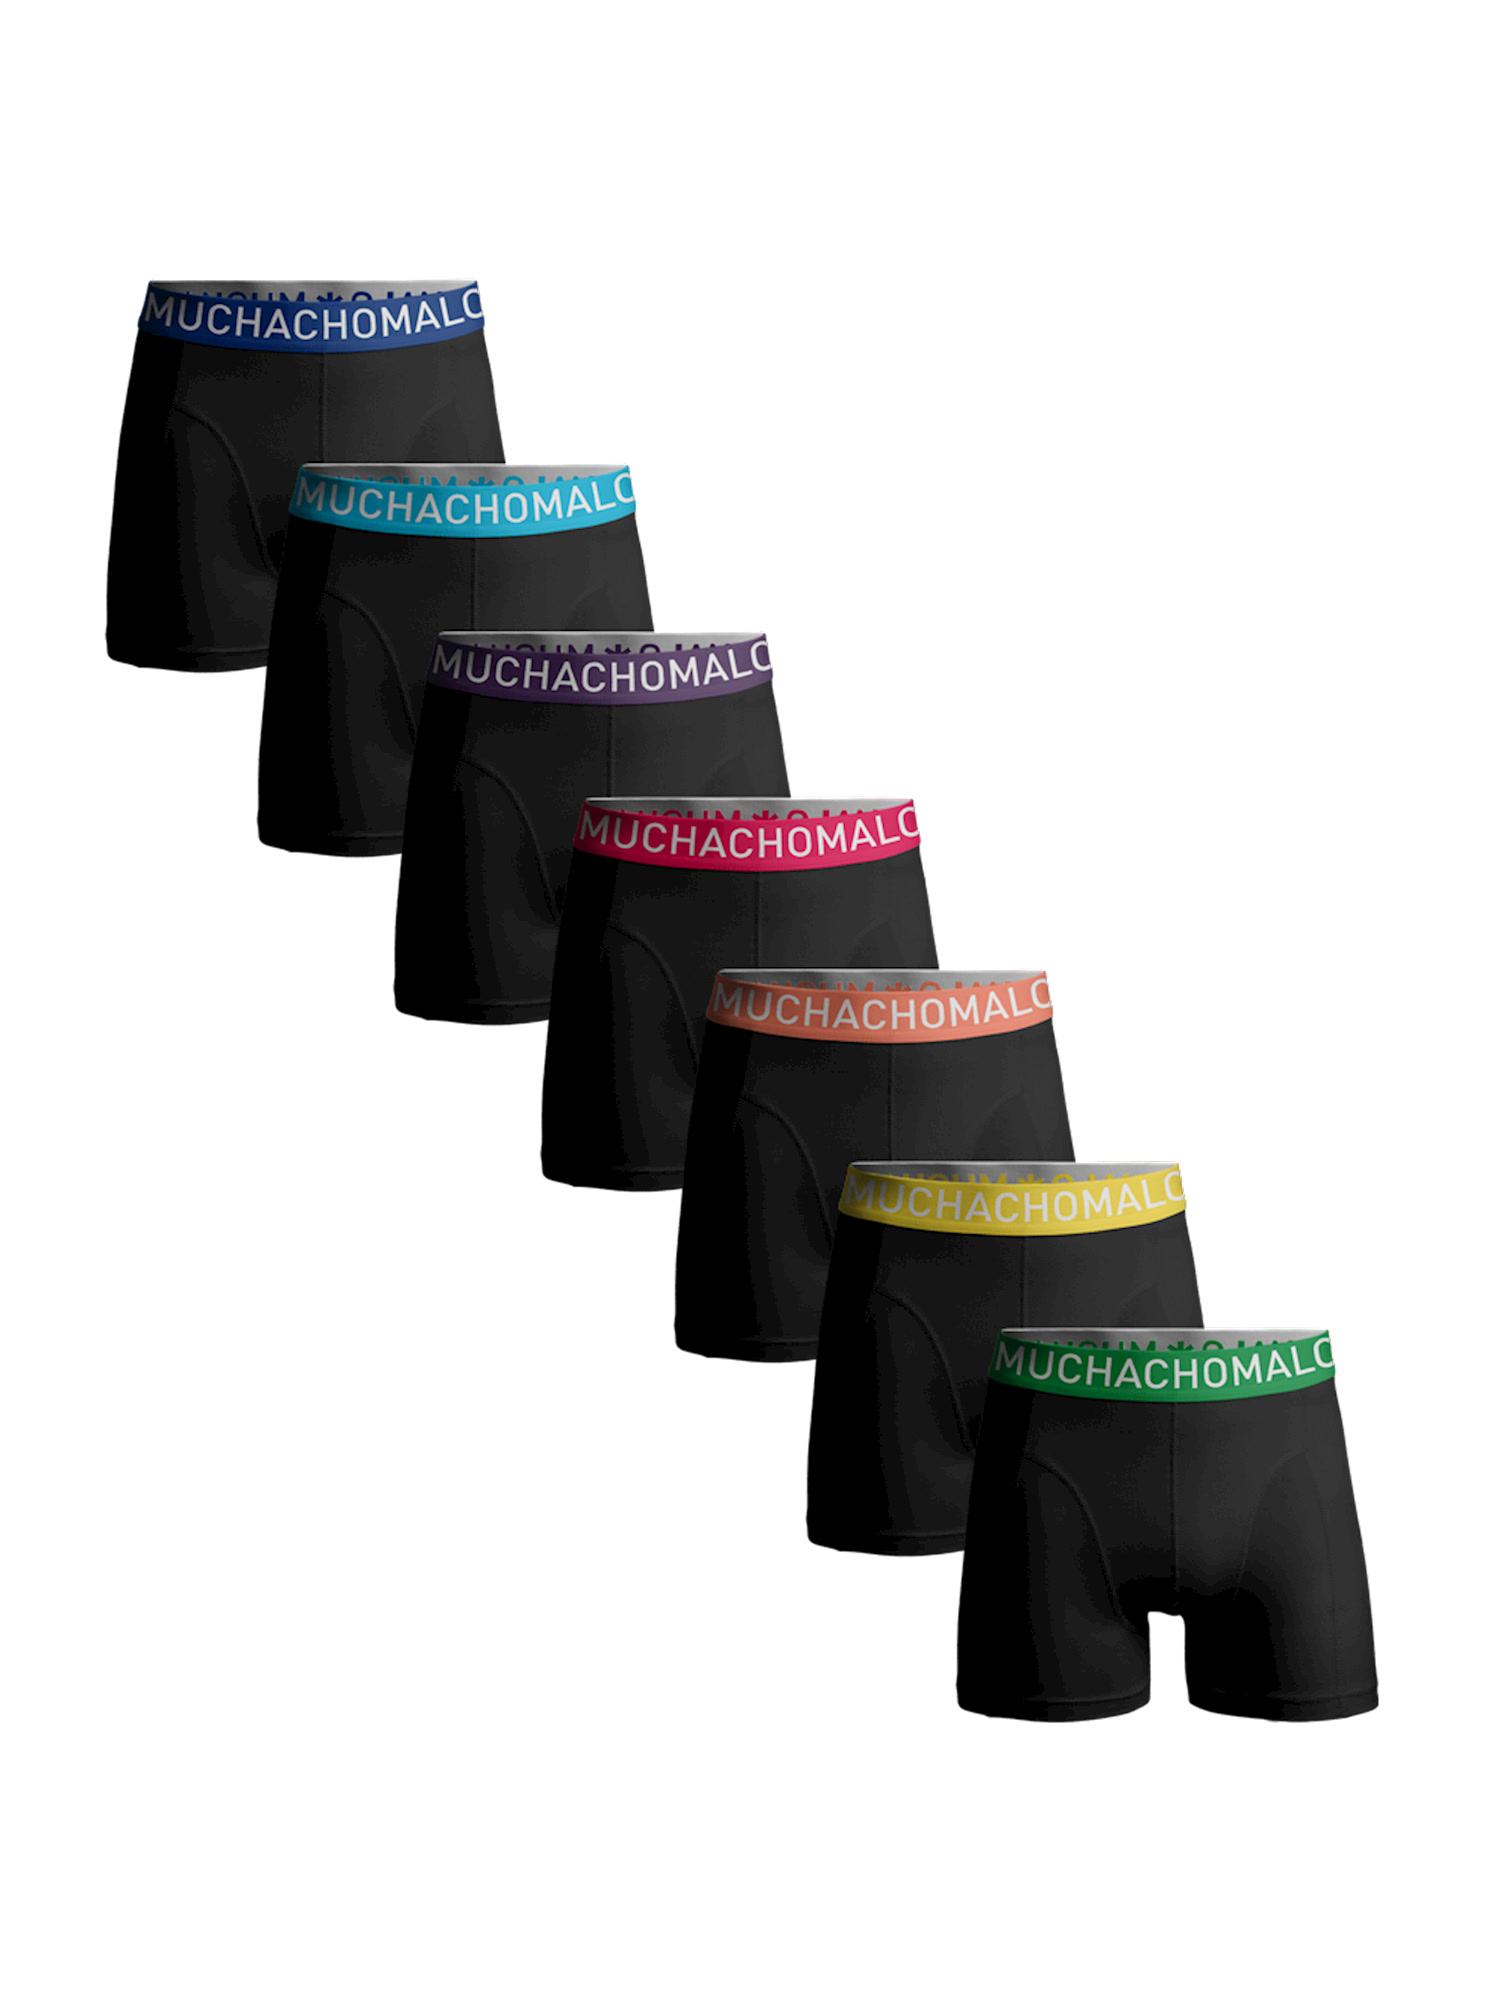 Боксеры Muchachomalo 7er-Set: Boxershorts, цвет Black/Black/Black/Black/Black/Black/Black r0001598 black